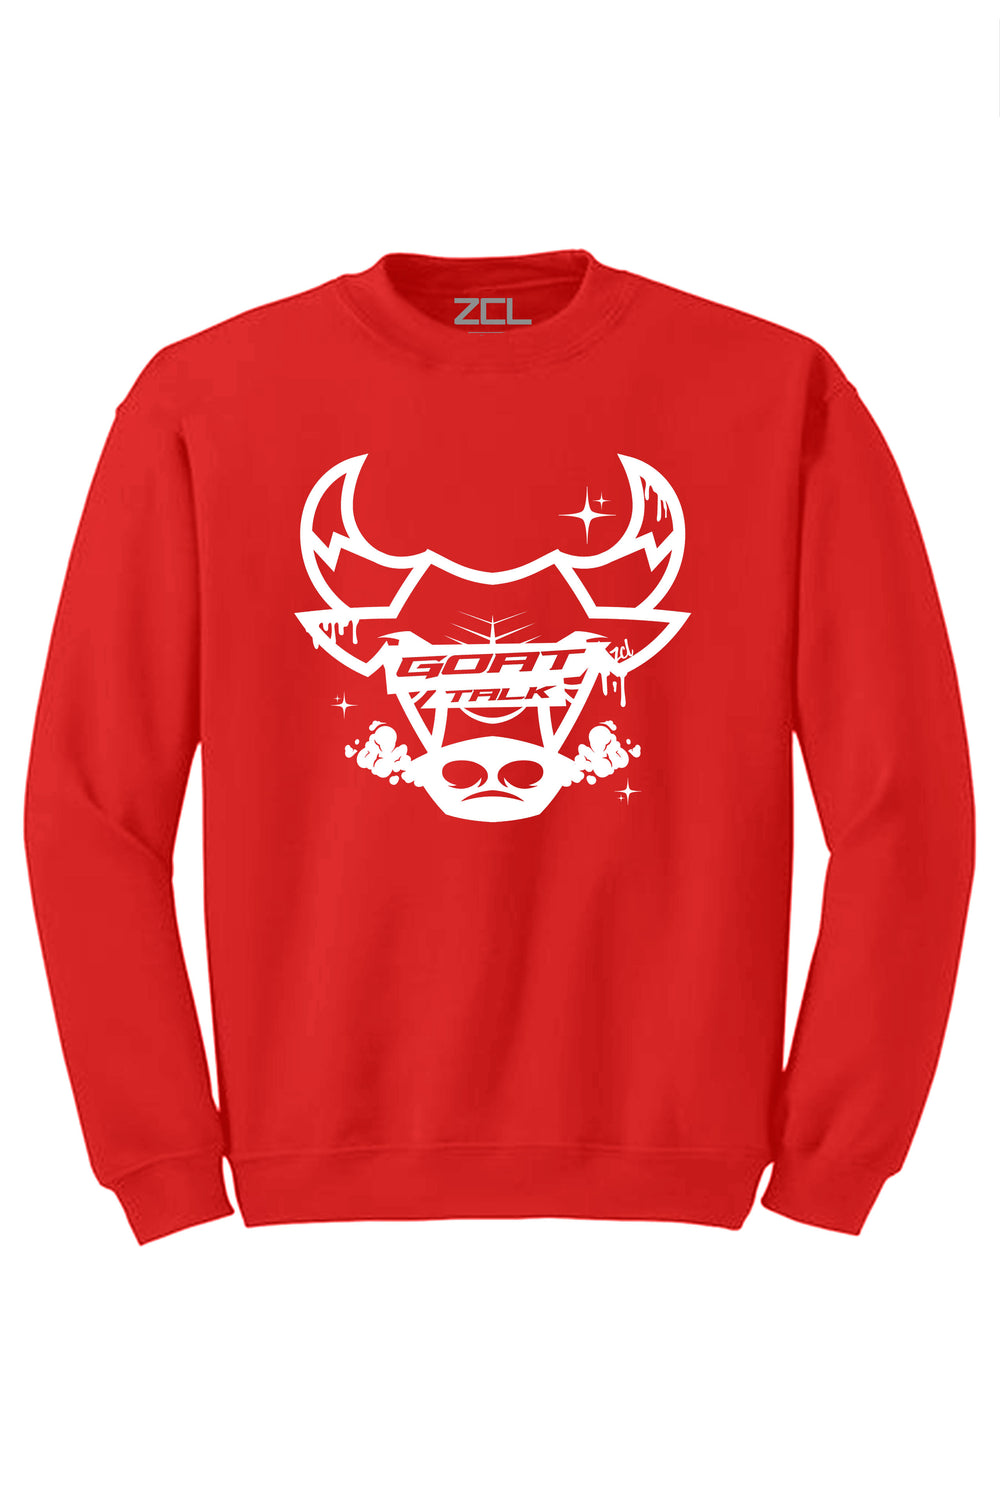 Goat Talk Crewneck Sweatshirt (White Logo) - Zamage